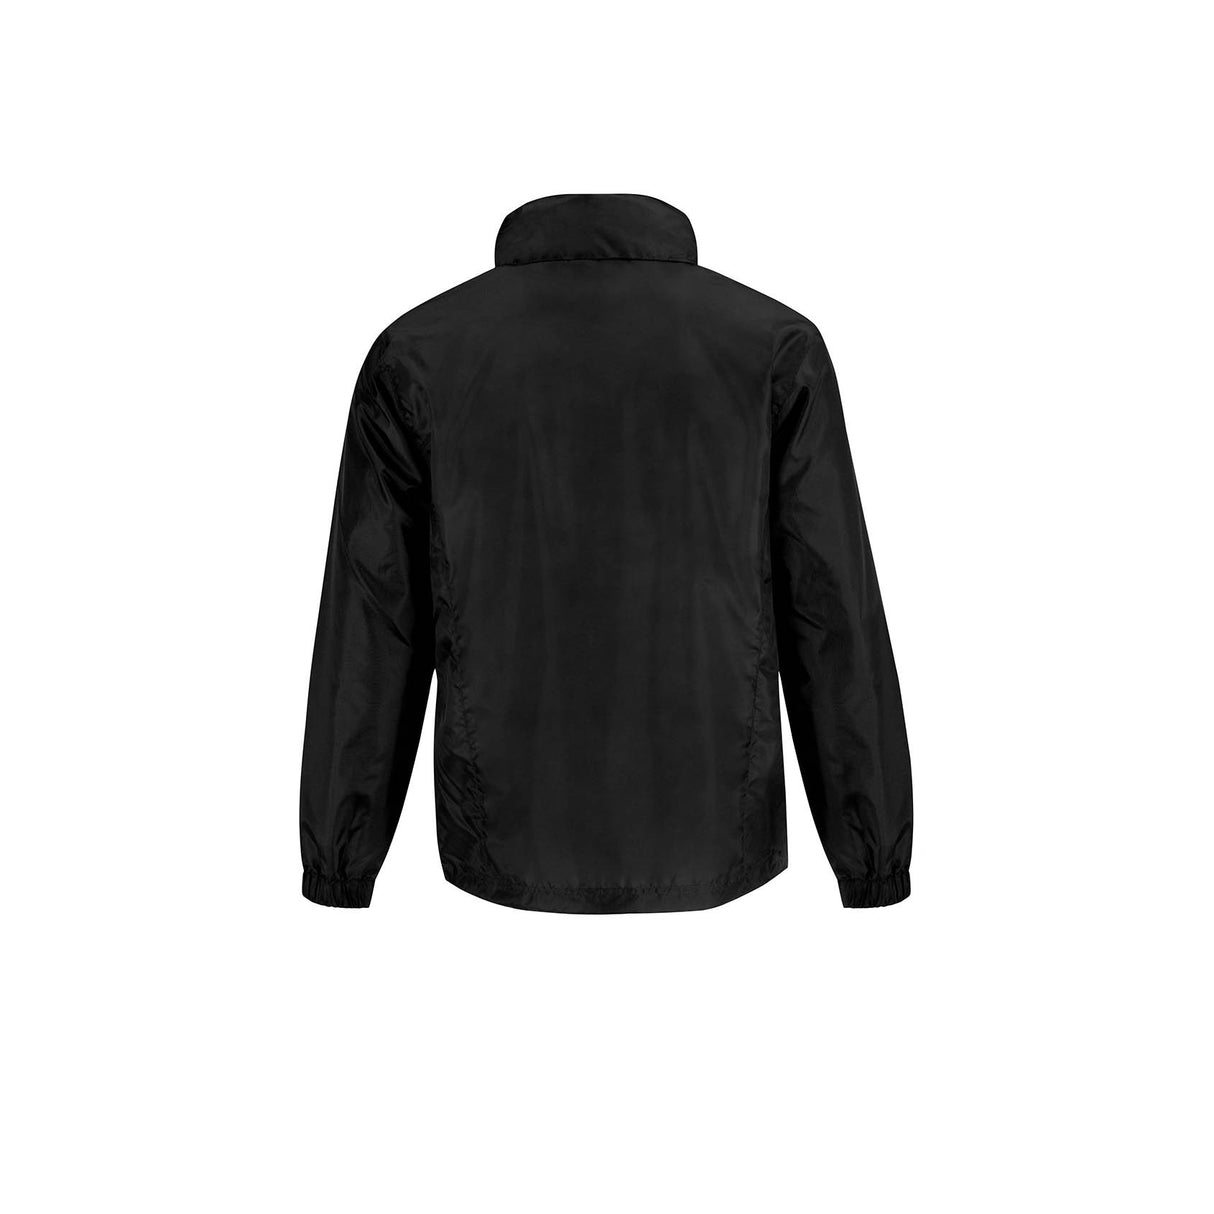 B&C ID.601 Windbreacker Lined Black Ladies Jacket, Size - XS